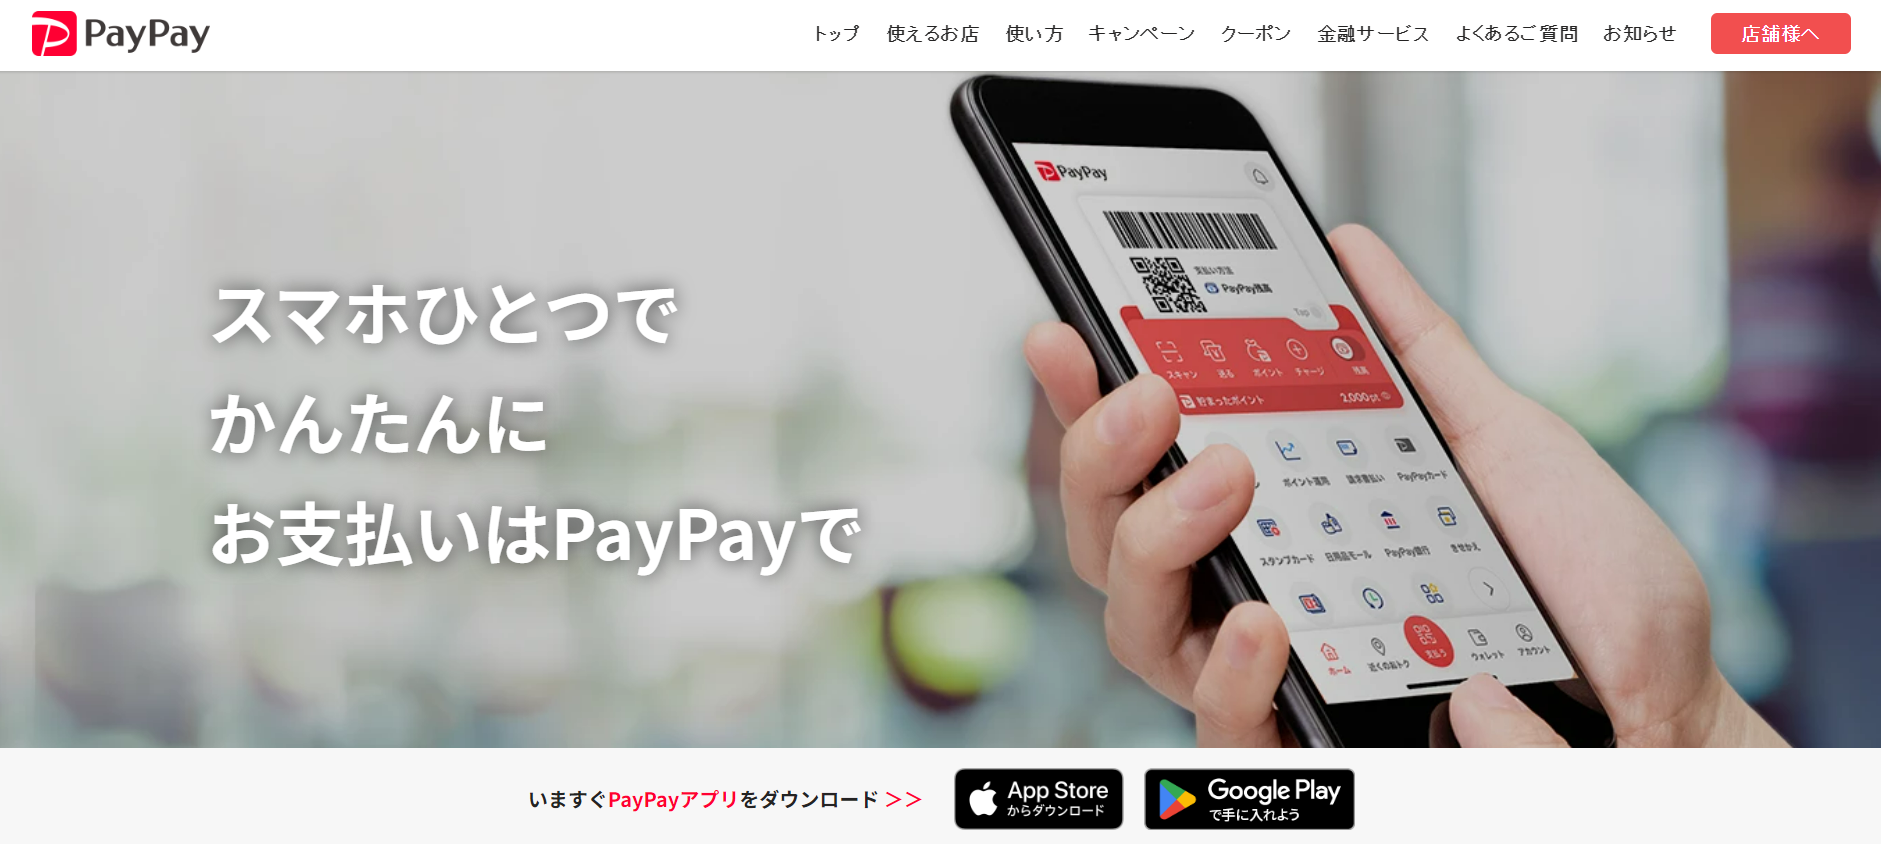 PayPay-日本第三方支付平台